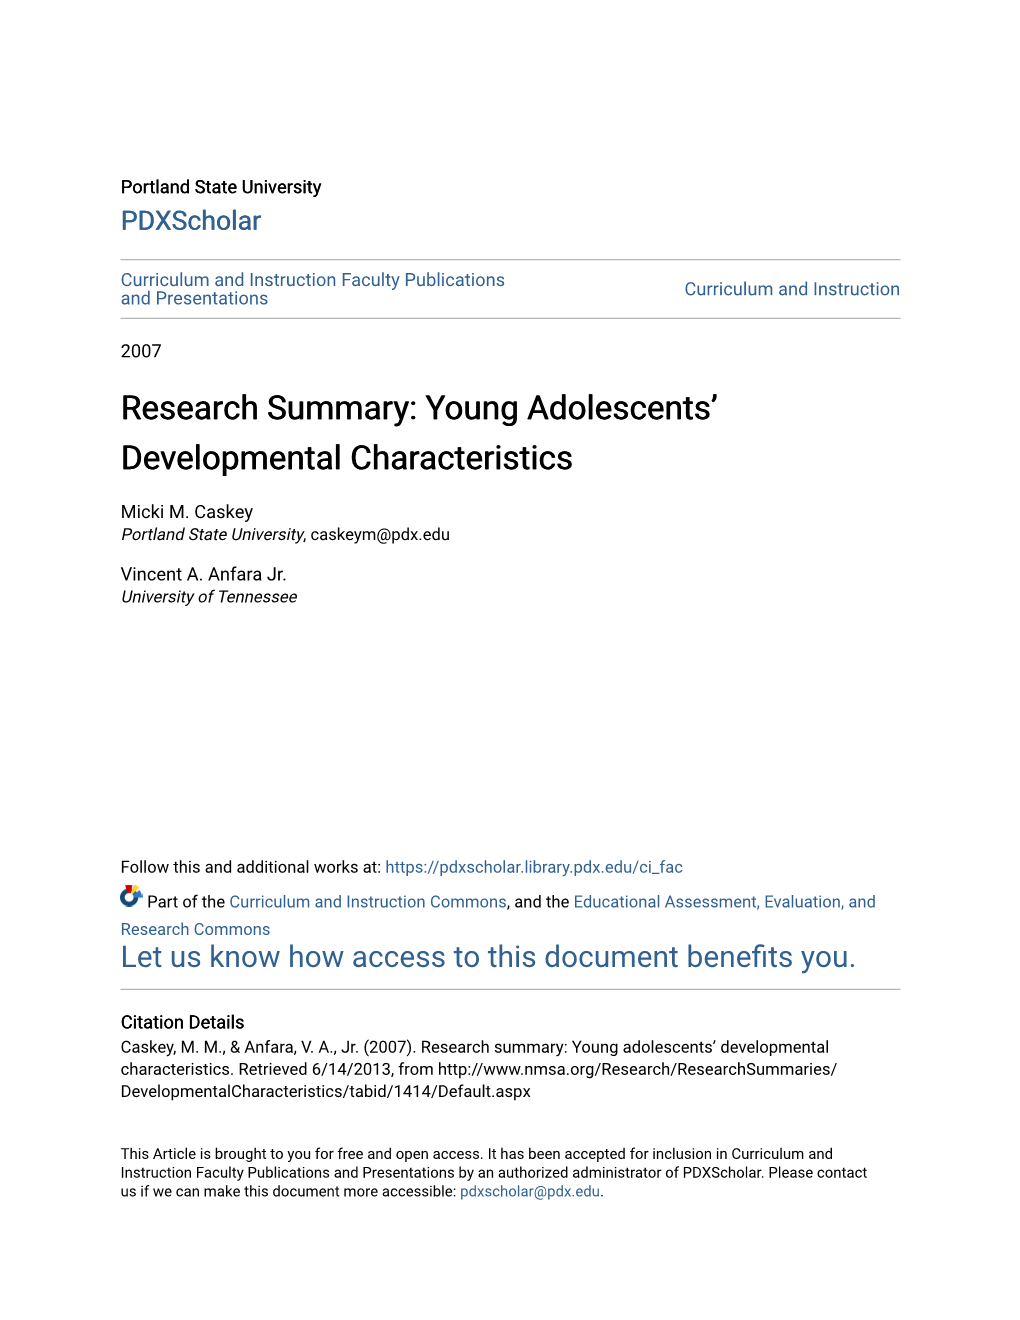 Young Adolescents' Developmental Characteristics